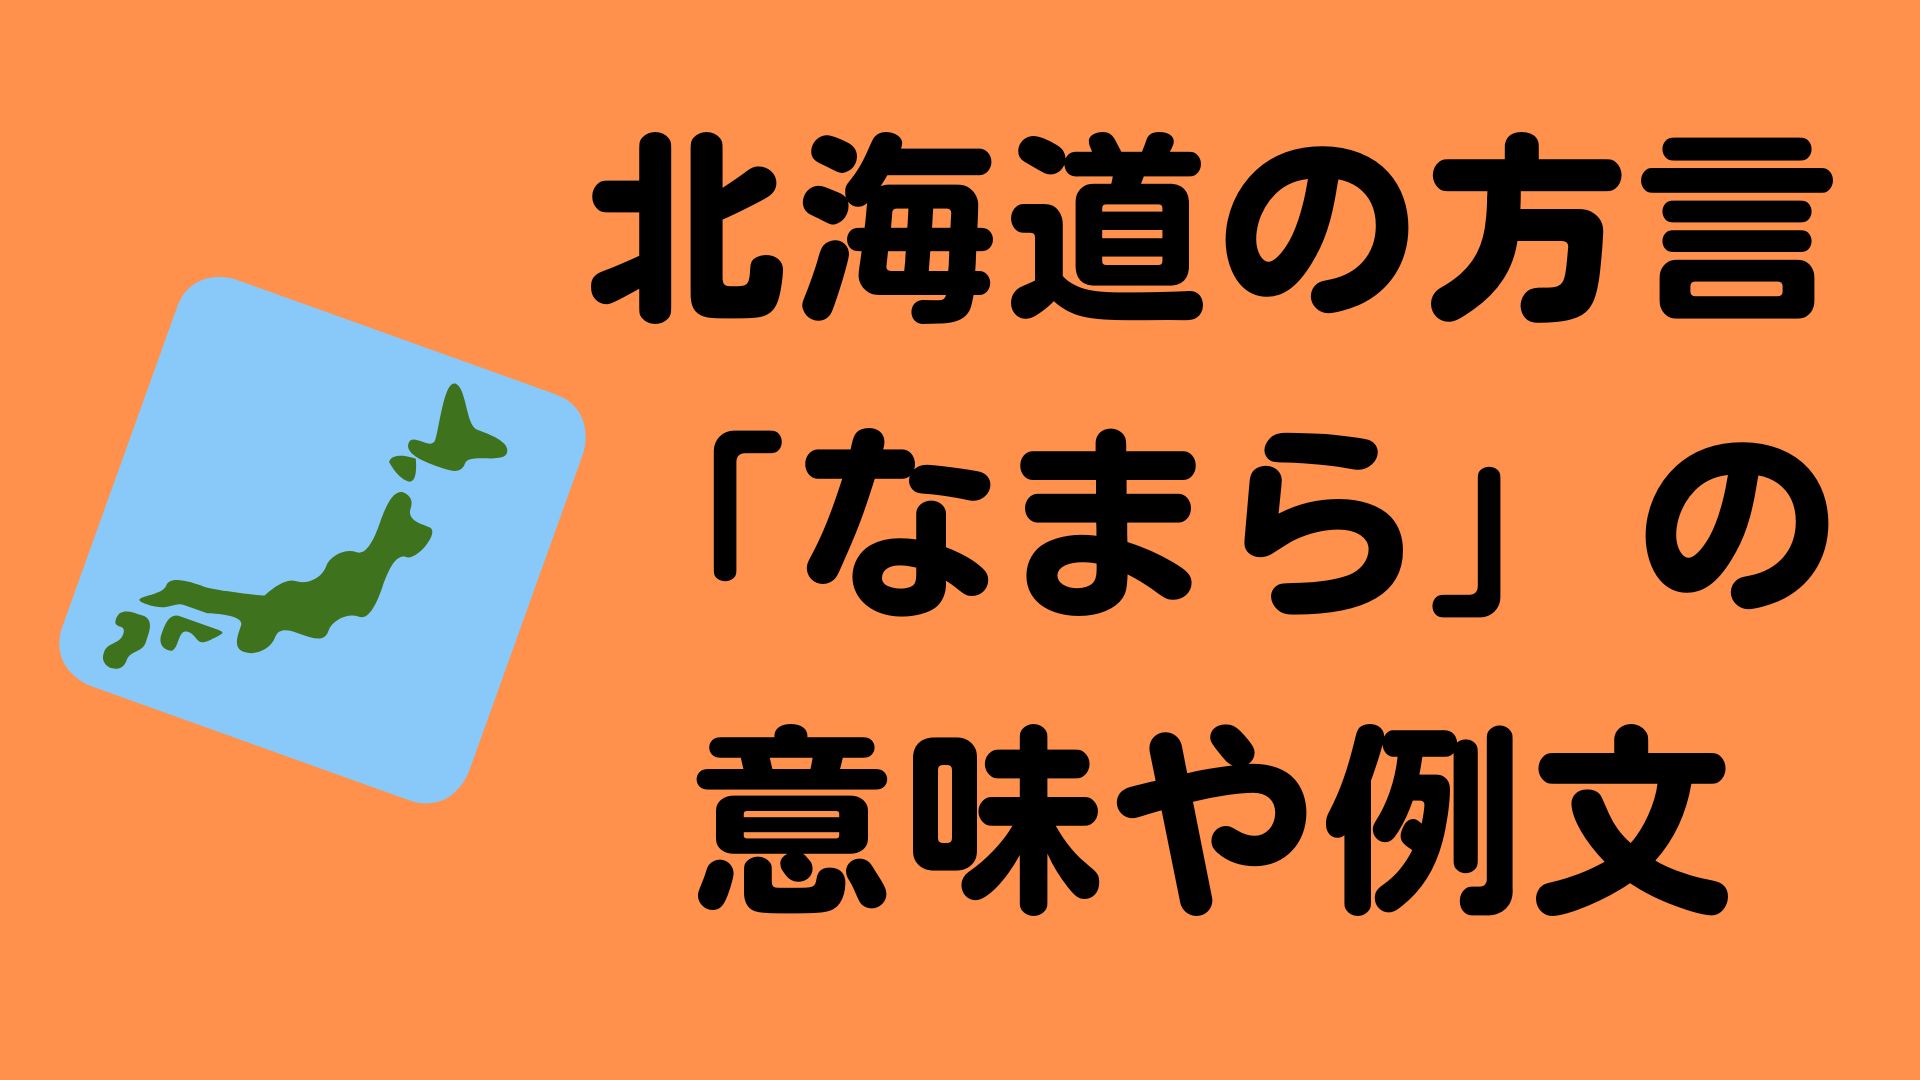 北海道の方言「なまら」の意味と例文